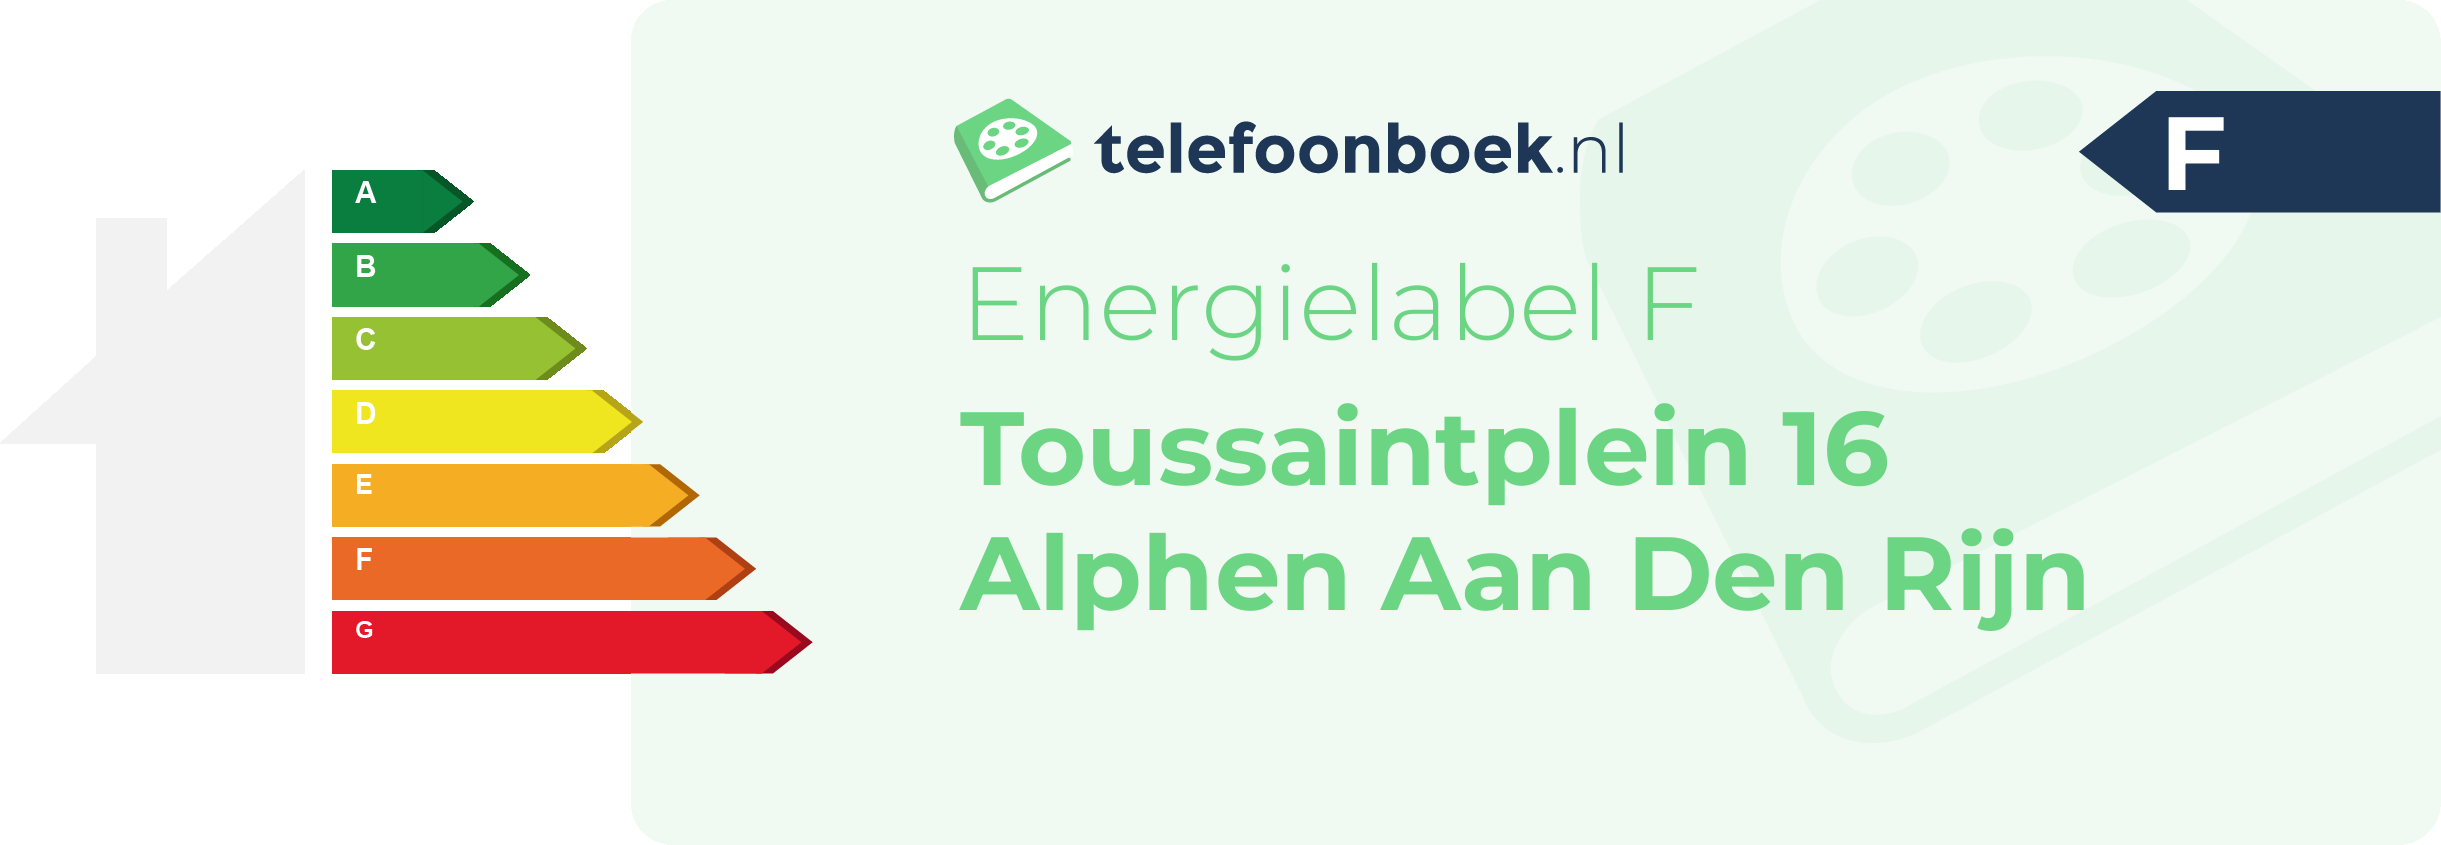 Energielabel Toussaintplein 16 Alphen Aan Den Rijn